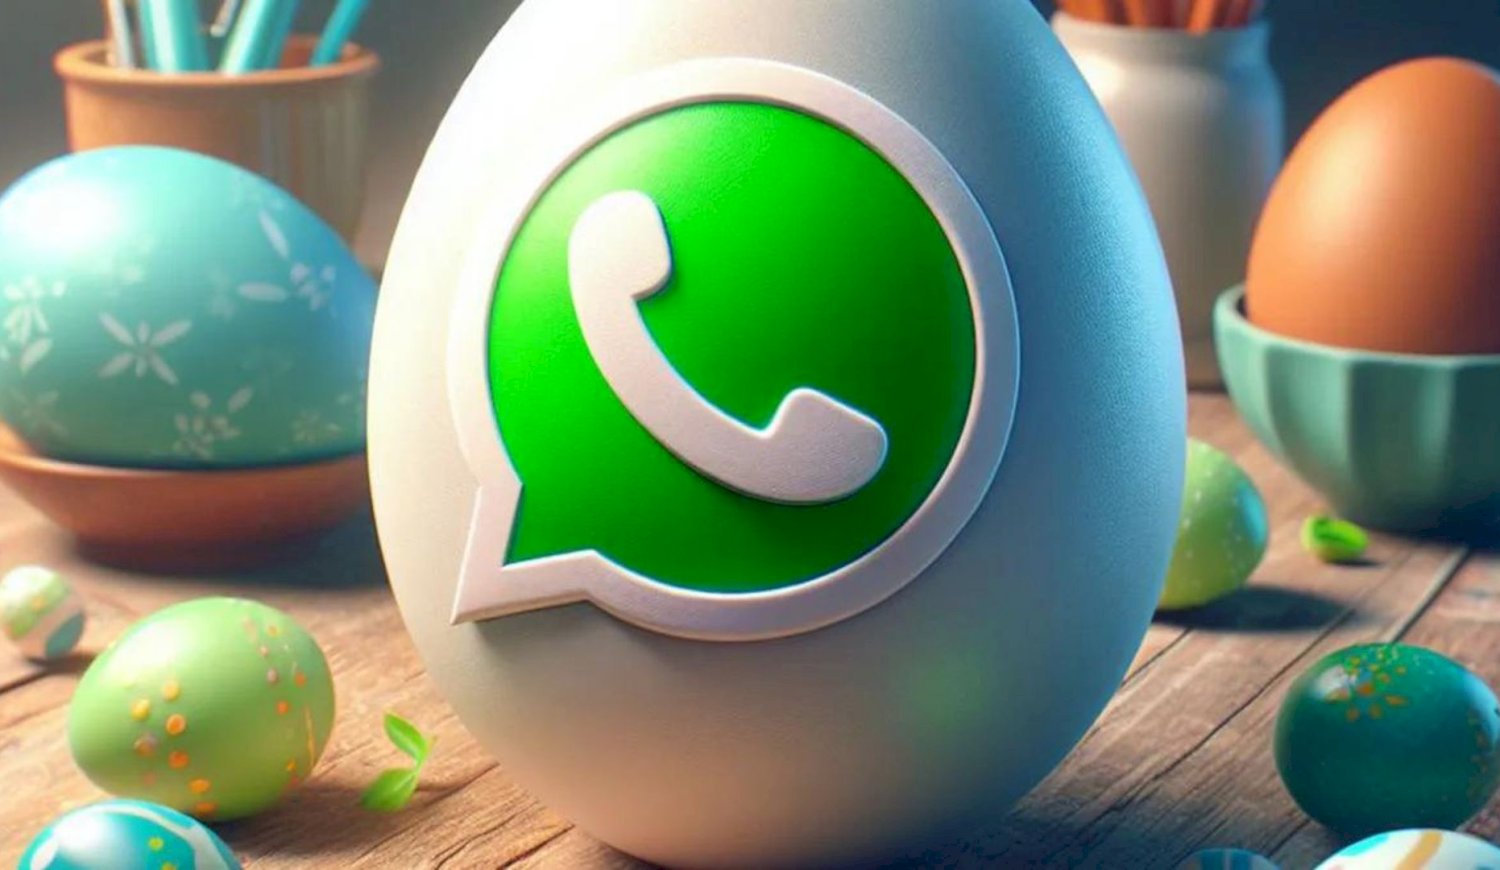 Llegó el "modo huevo de Pascua" a WhatsApp